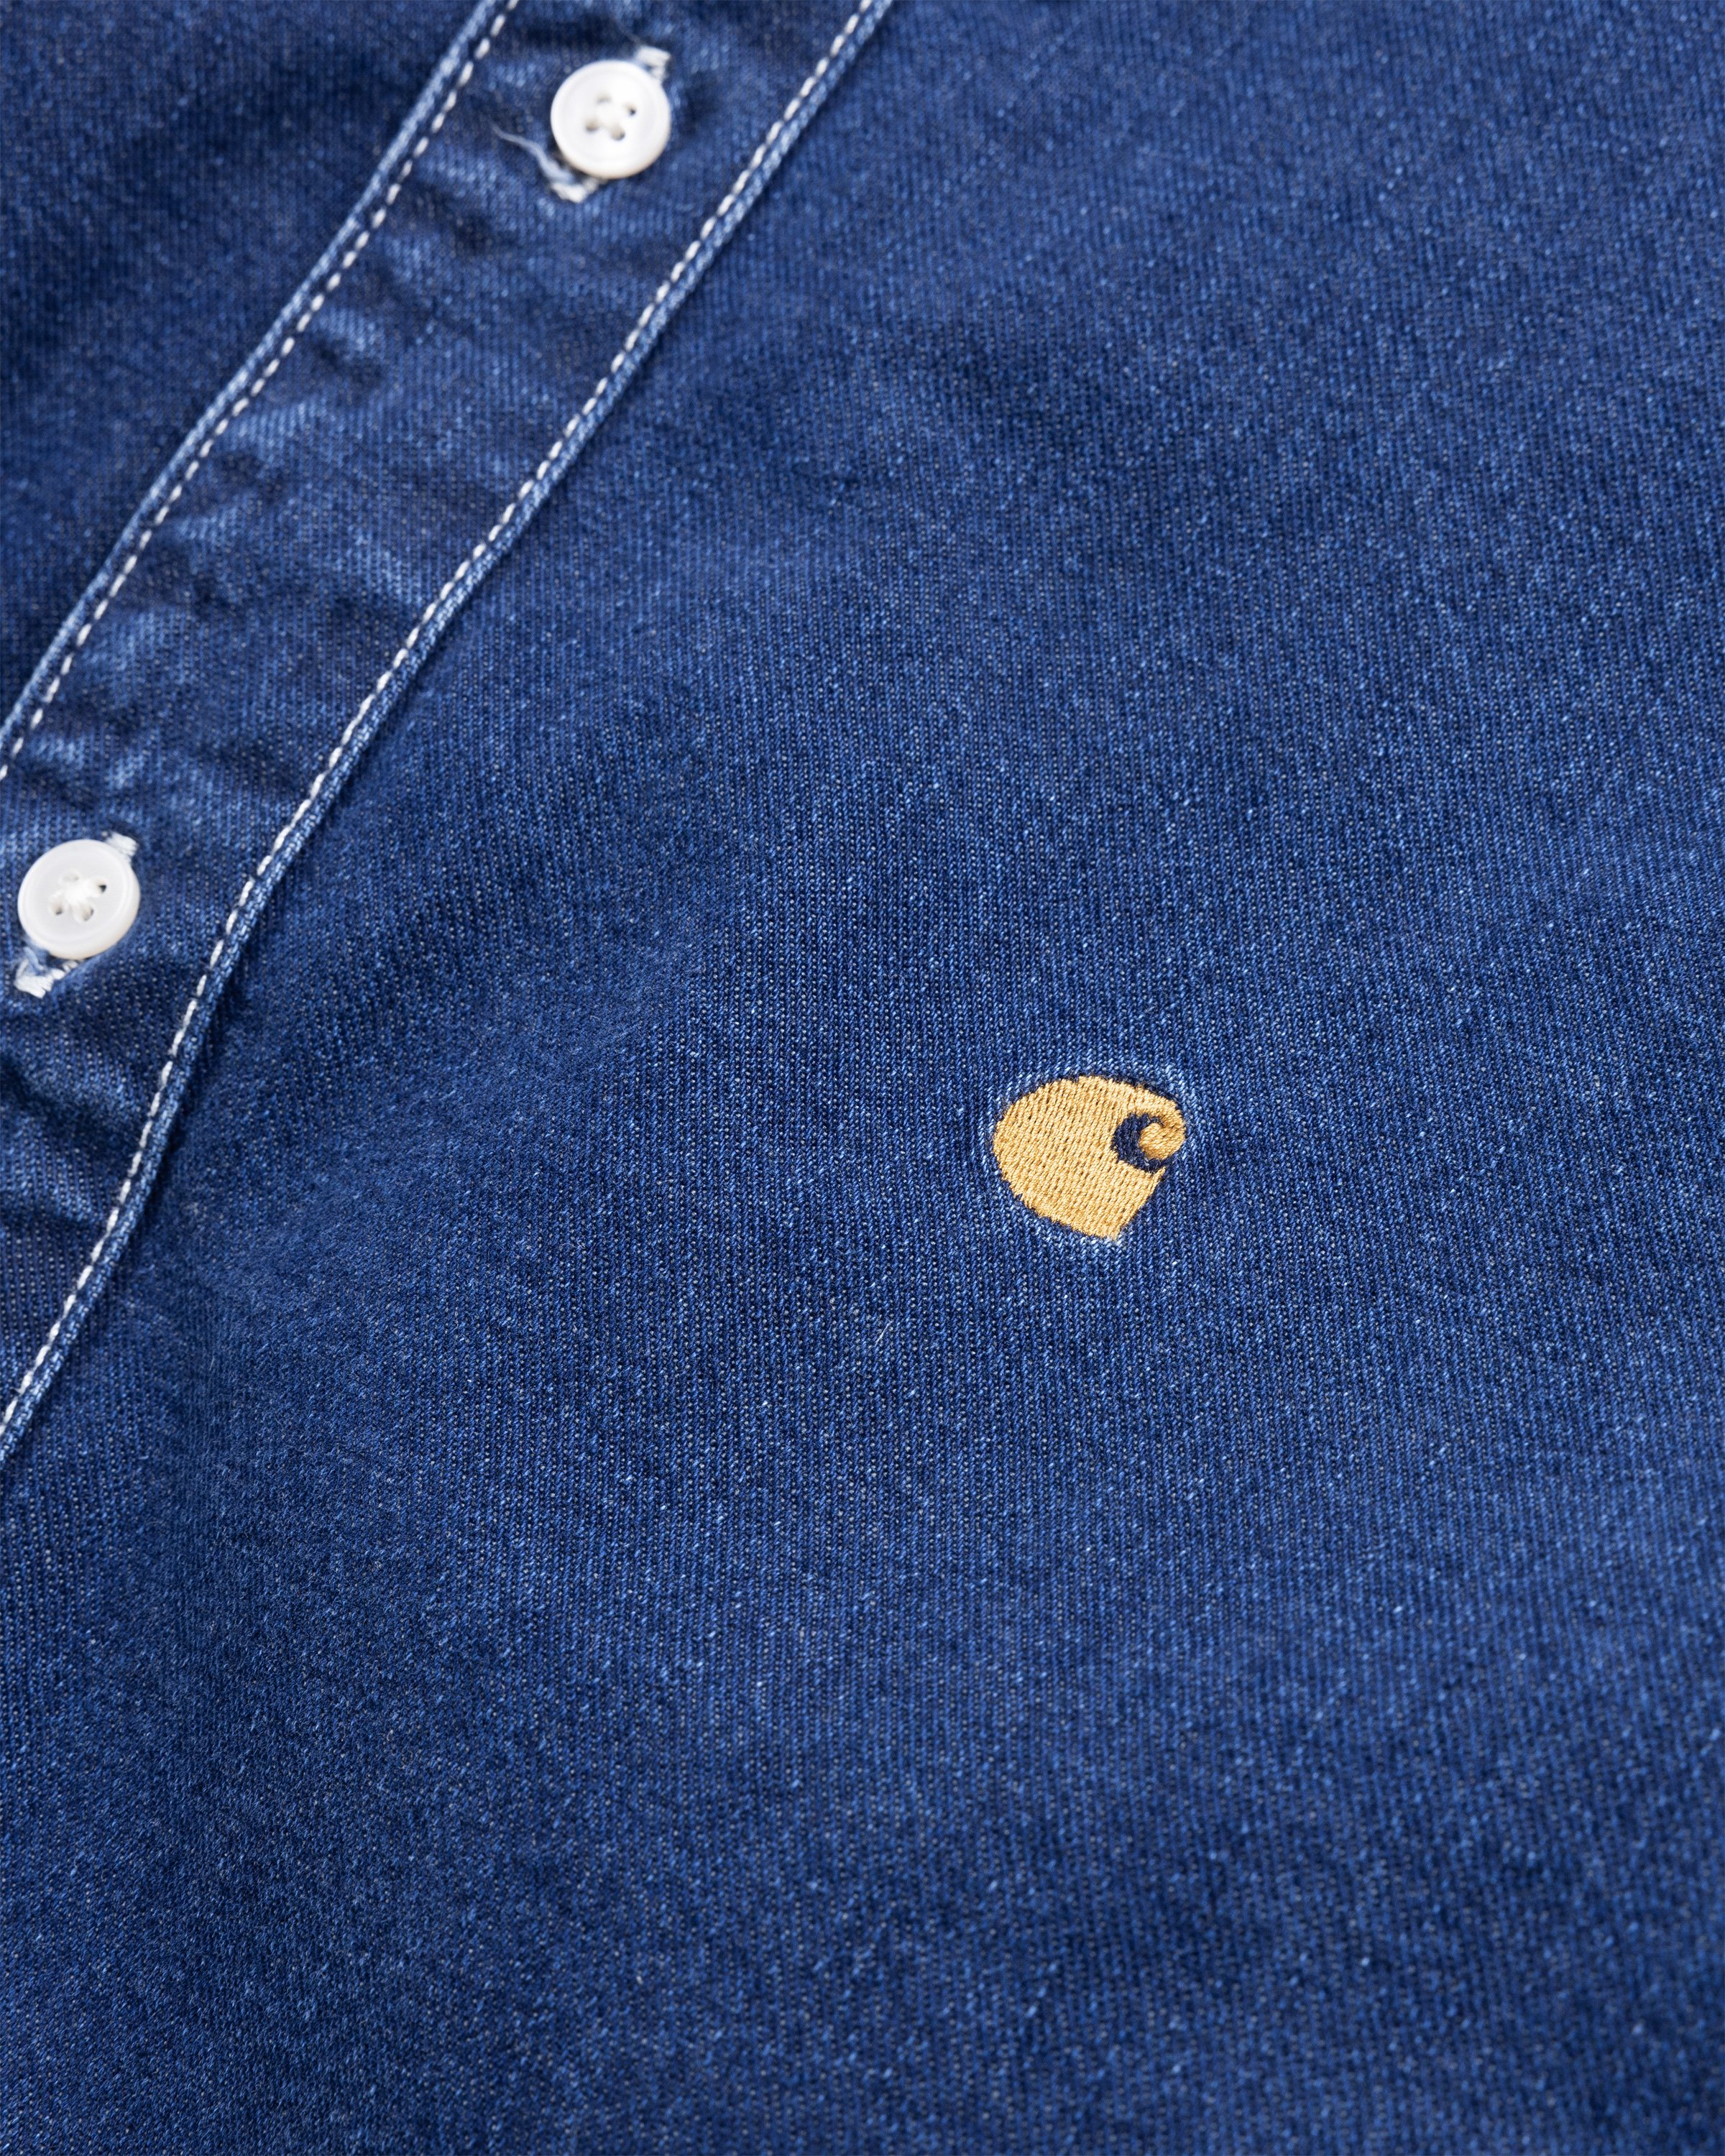 Carhartt WIP - Weldon Denim Shirt Stonewashed Blue - Clothing - Blue - Image 6